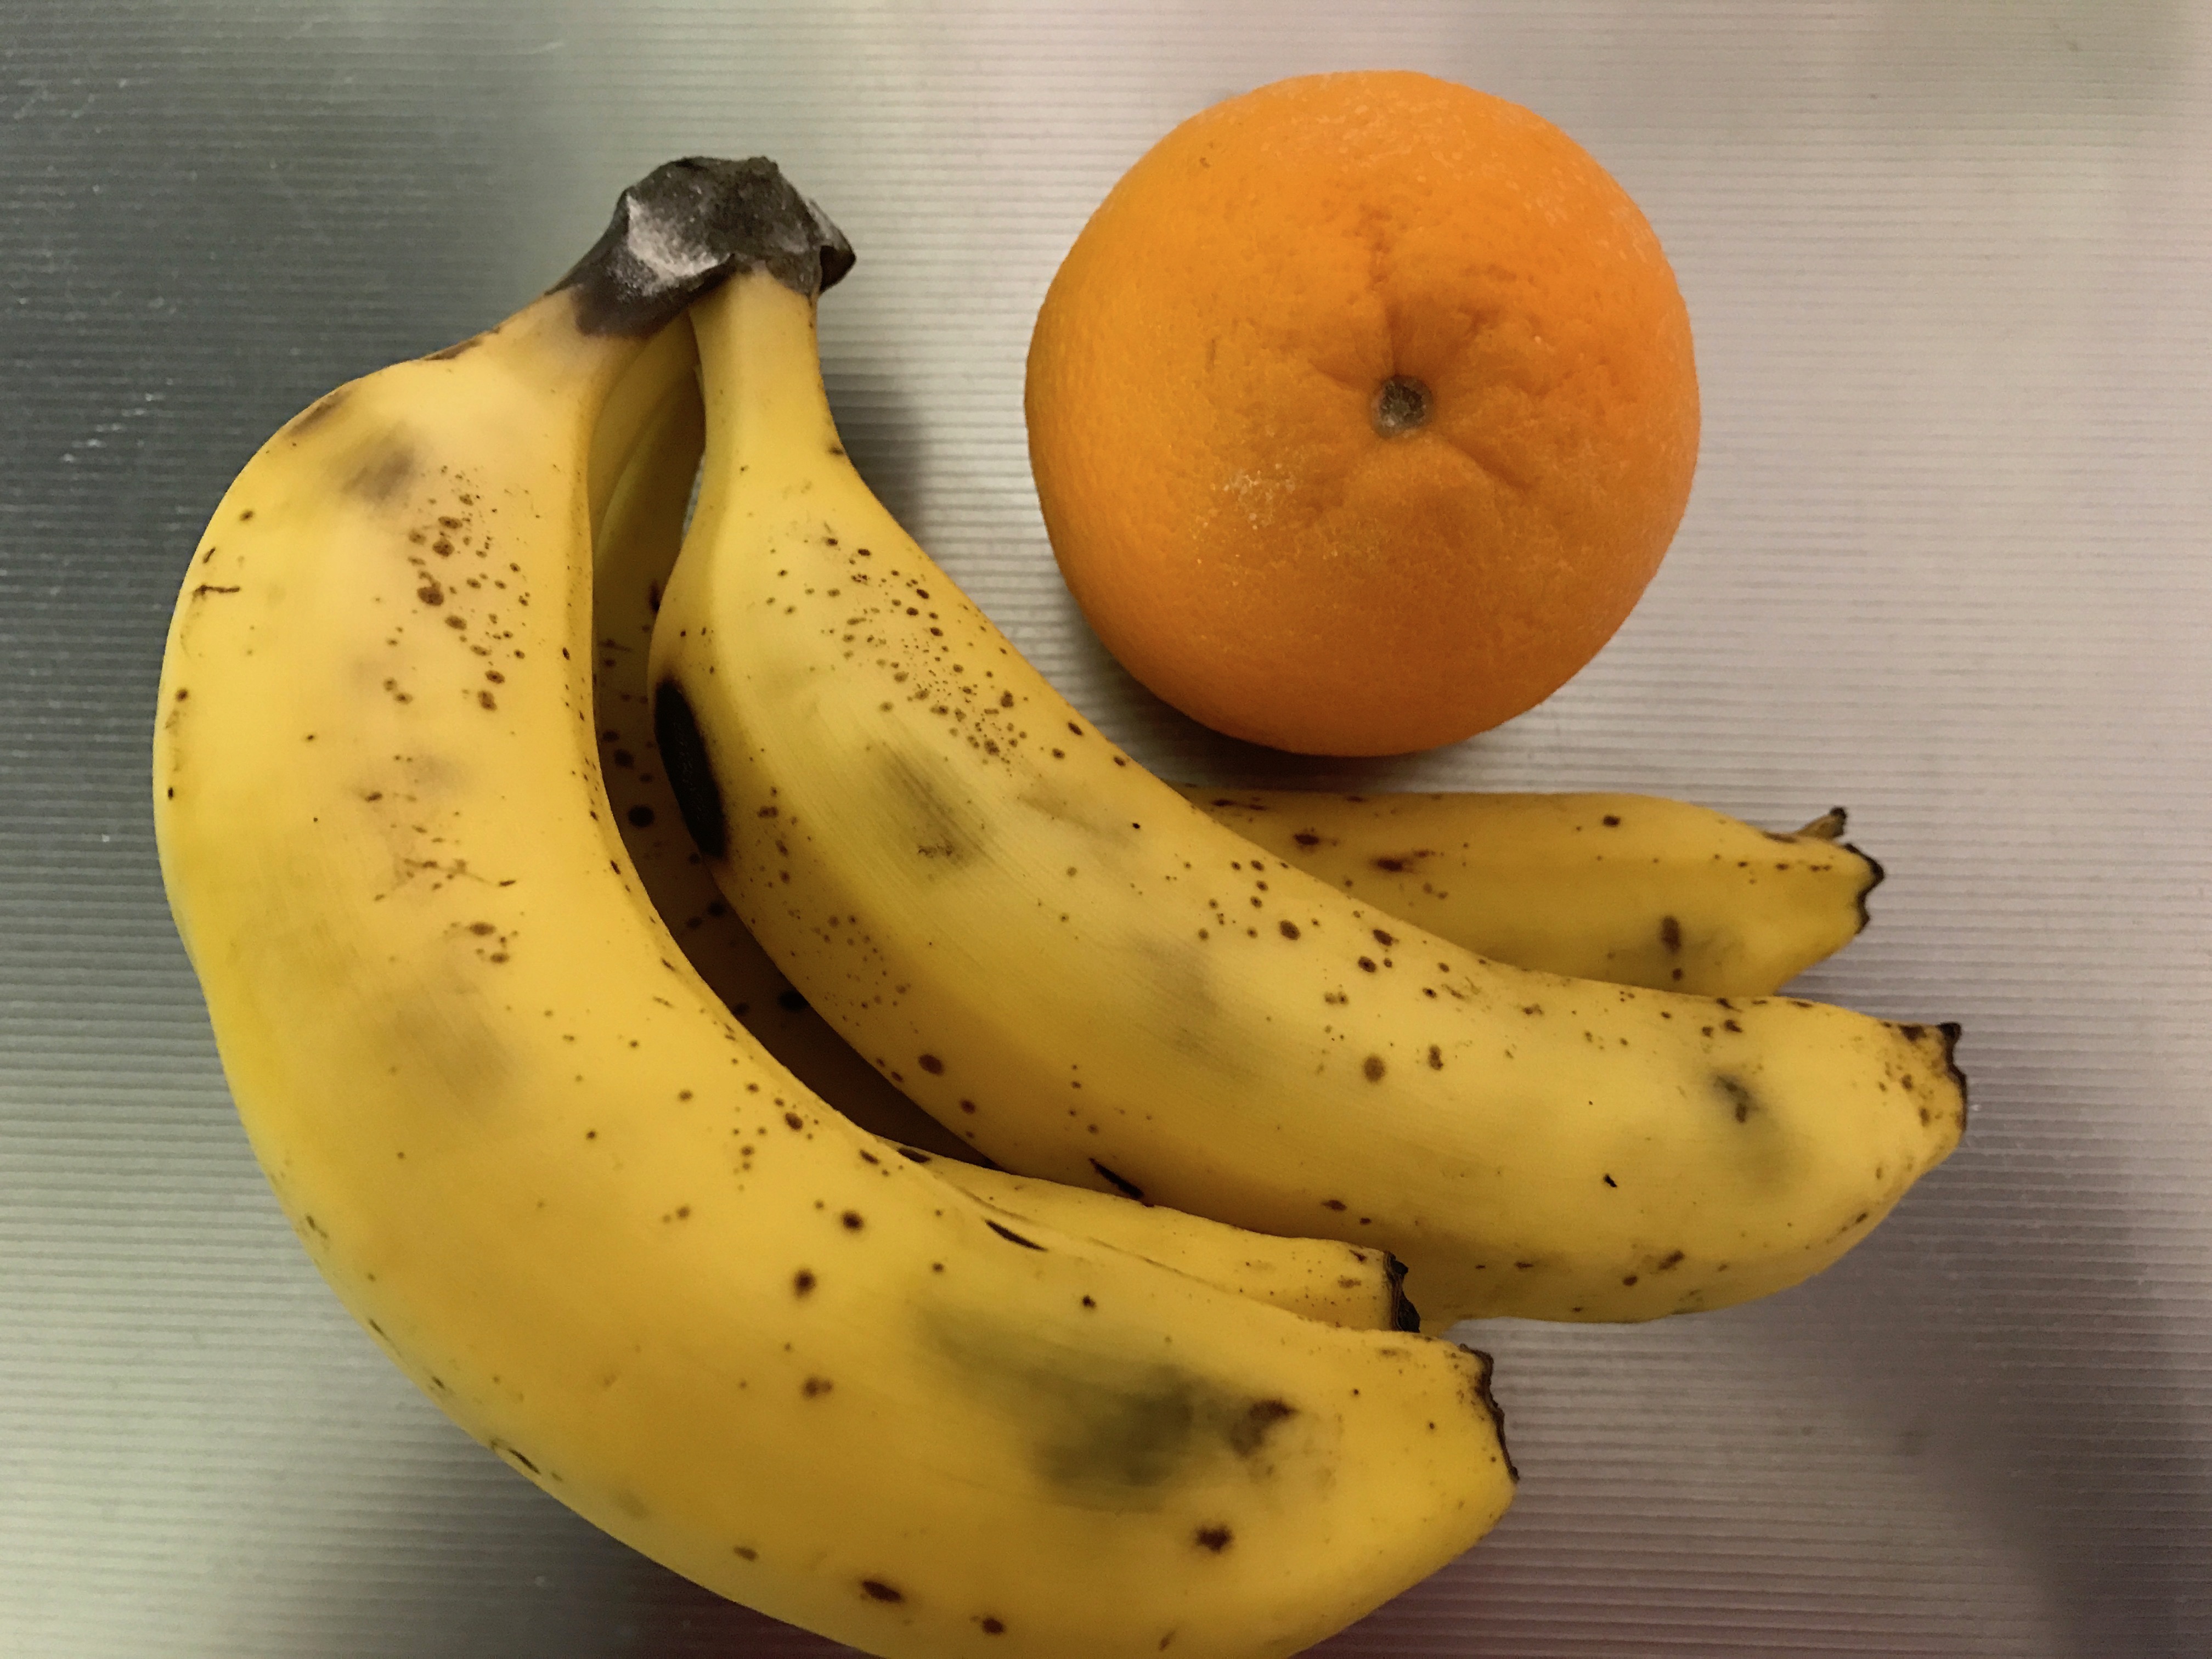 バナナとオレンジ